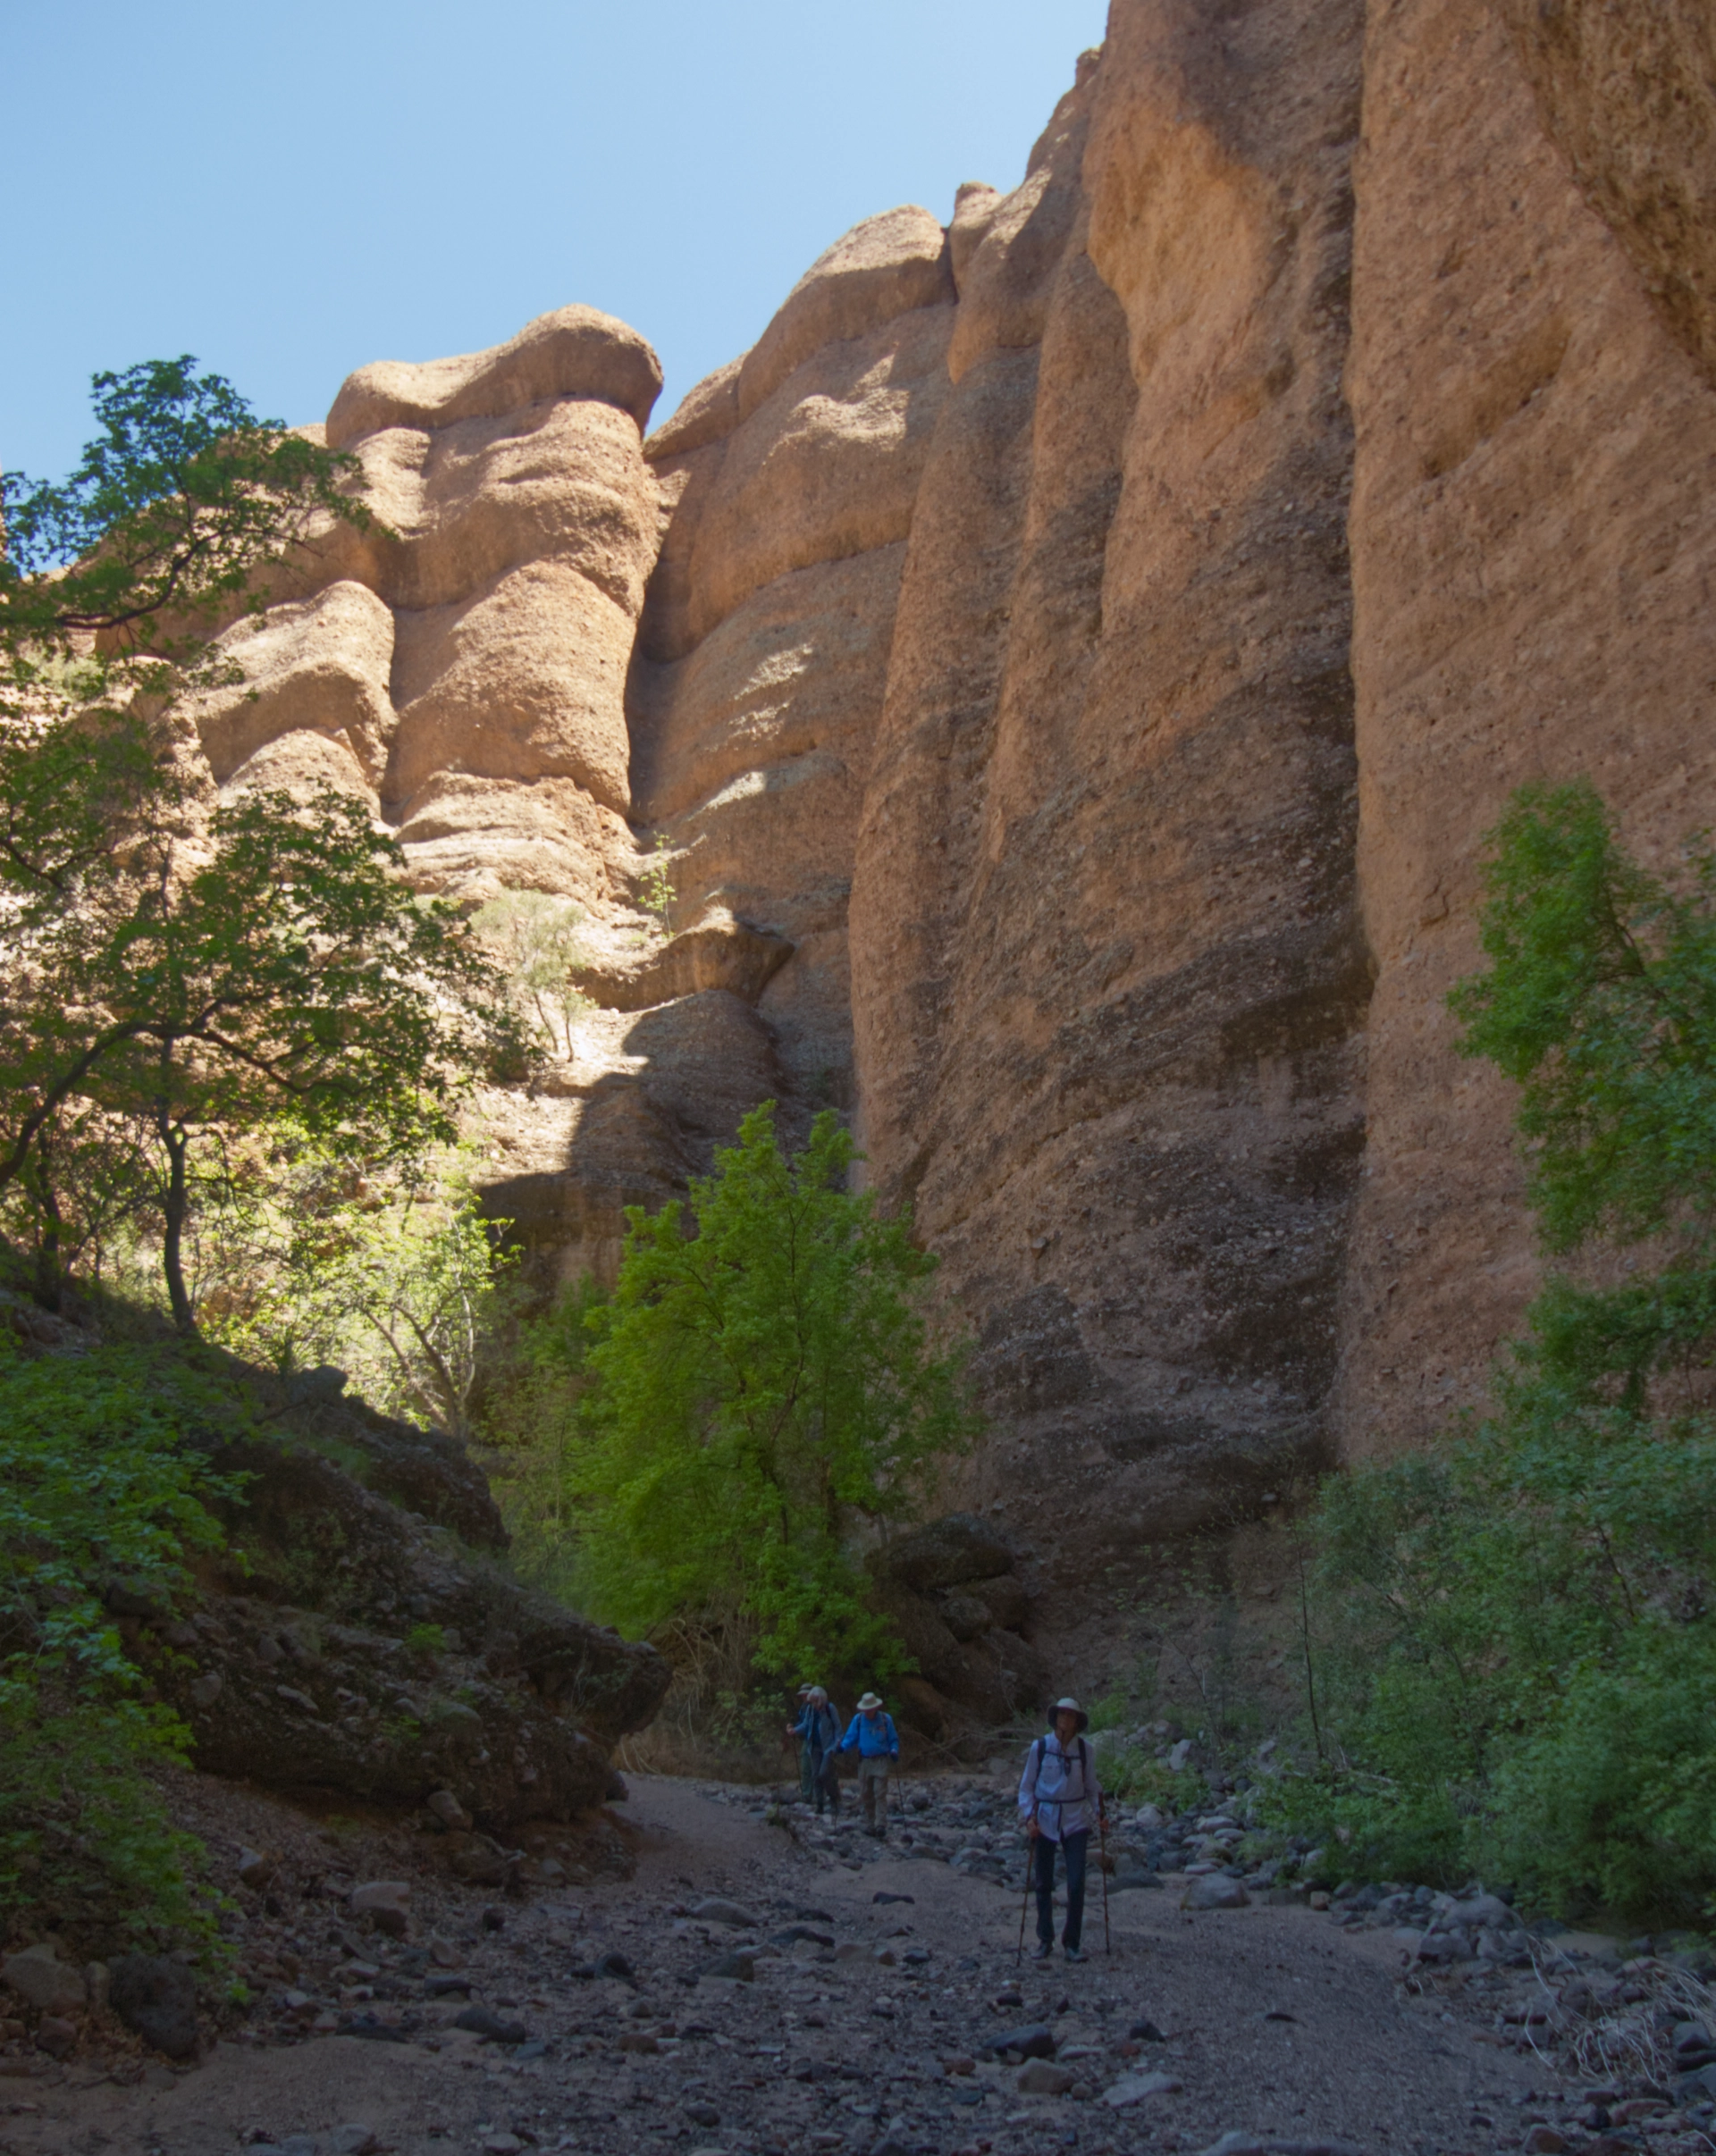 three hikers in deep shade below towering cliffs